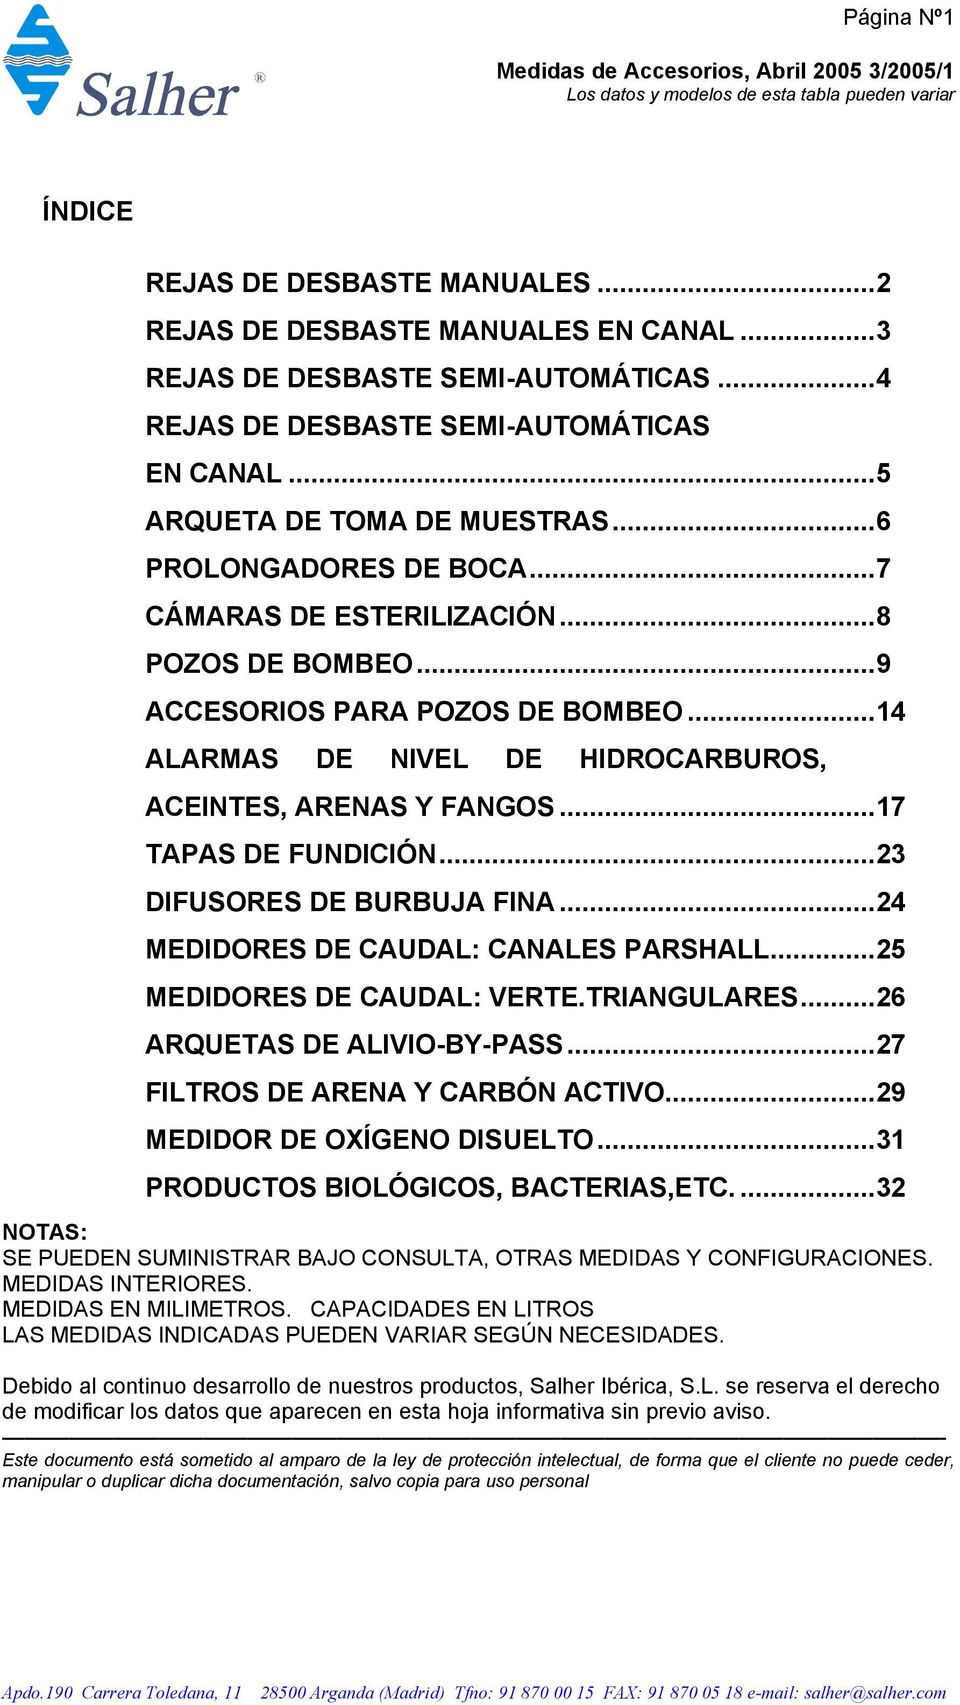 ..14 ALARMAS DE NIVEL DE HIDROCARBUROS, ACEINTES, ARENAS Y FANGOS...17 TAPAS DE FUNDICIÓN...23 DIFUSORES DE BURBUJA FINA...24 MEDIDORES DE CAUDAL: CANALES PARSHALL...25 MEDIDORES DE CAUDAL: VERTE.